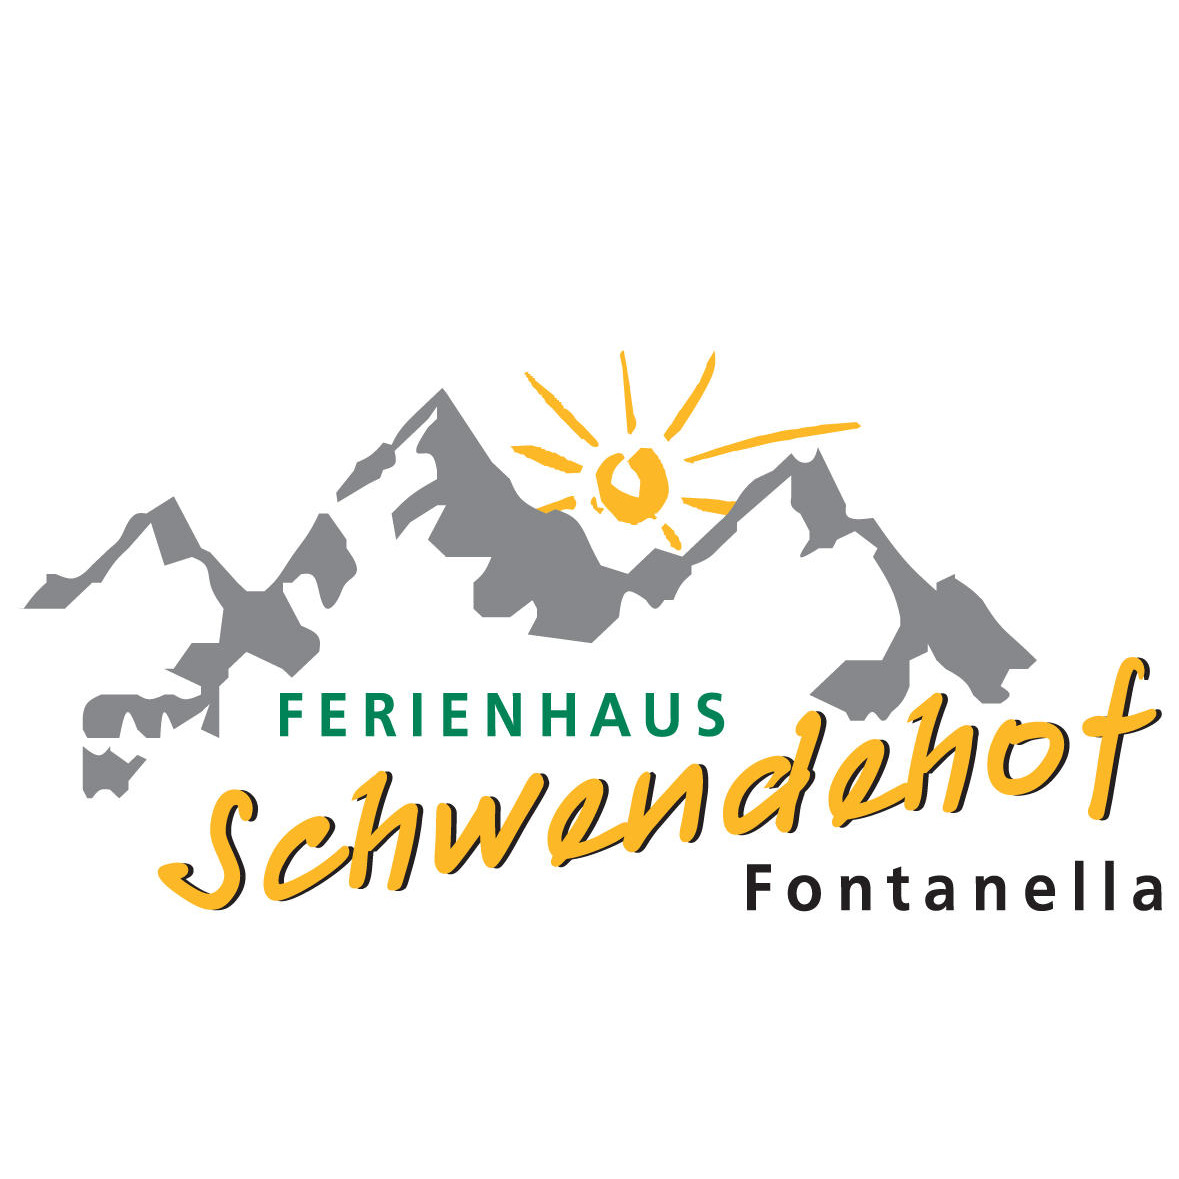 Ferienhaus Schwendehof in 6733 Fontanella Logo